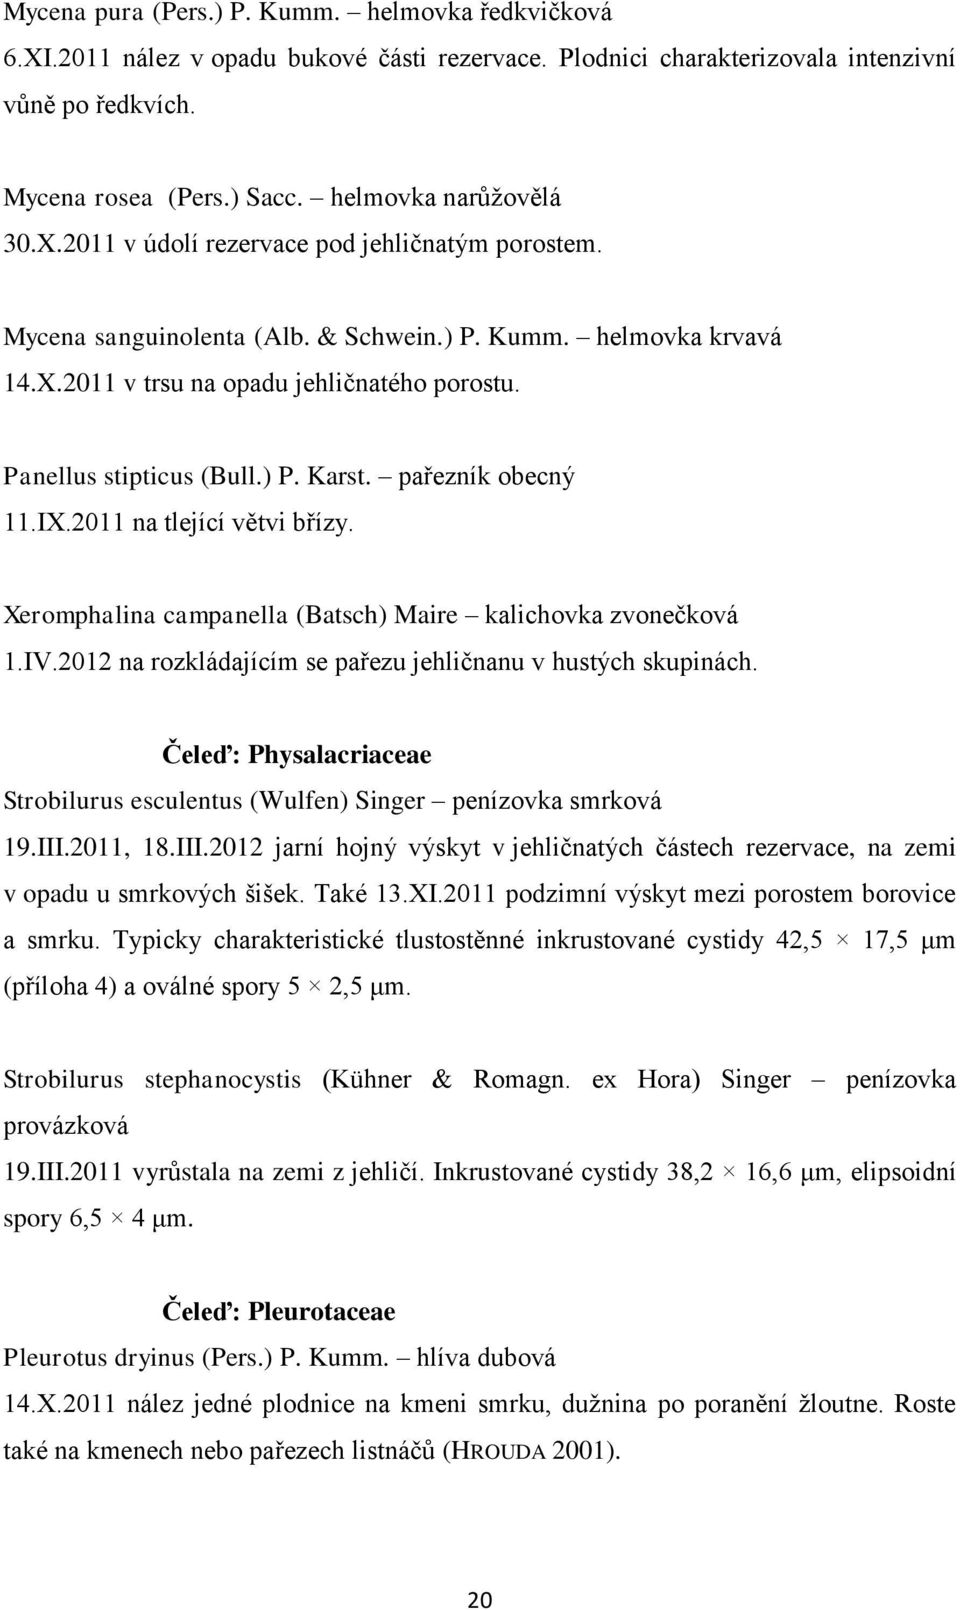 Panellus stipticus (Bull.) P. Karst. pařezník obecný 11.IX.2011 na tlející větvi břízy. Xeromphalina campanella (Batsch) Maire kalichovka zvonečková 1.IV.